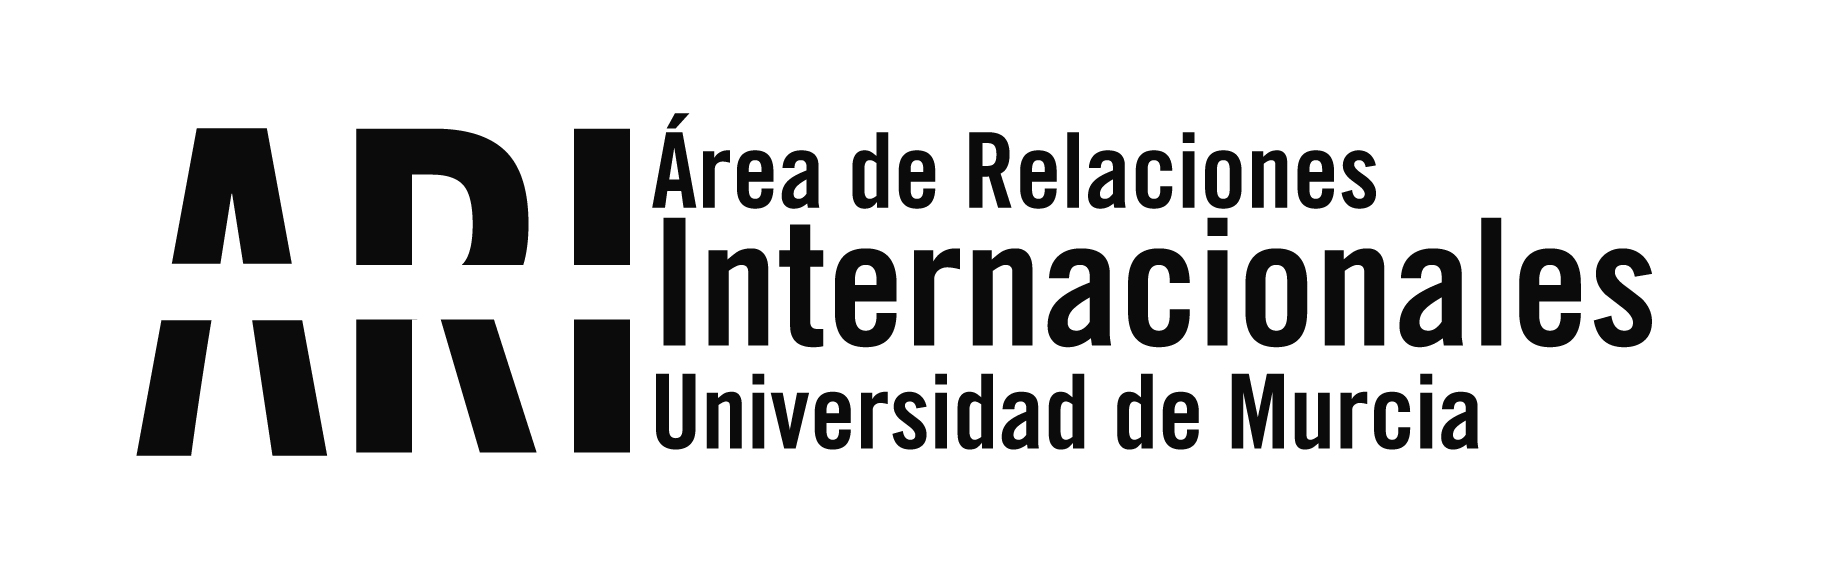 Charlas informativas del programa ILA 2016-17 de intercambio con Latinoamérica - Área de Relaciones Internacionales